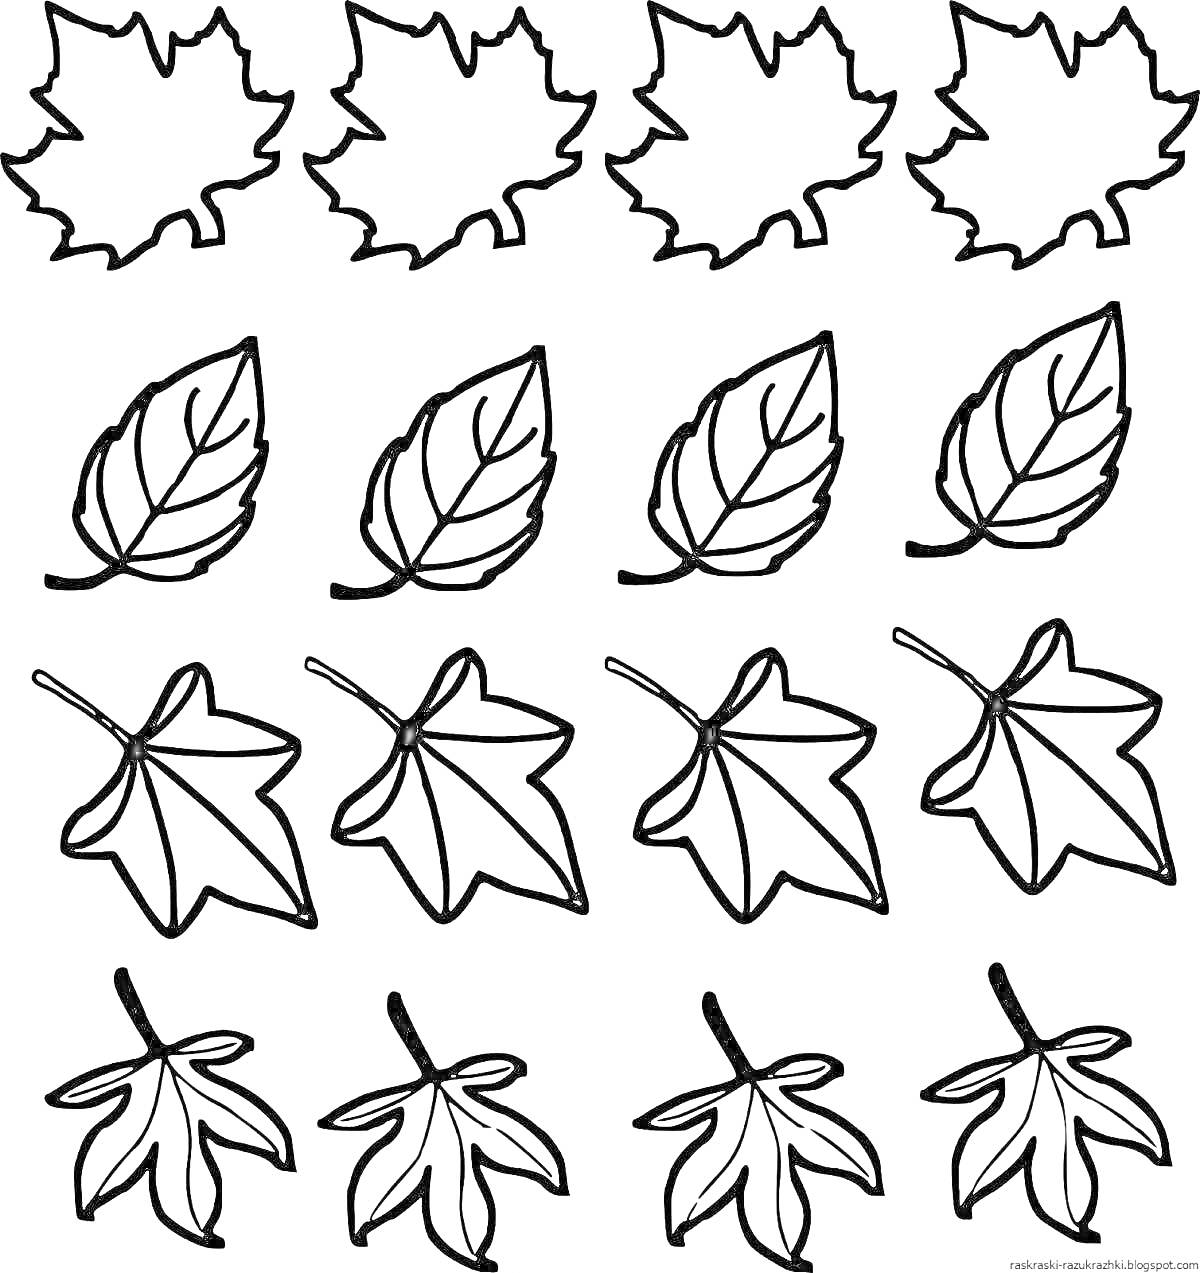 Раскраска Листья трех разных видов: кленовые листья, овальные листья с прожилками, листья камфорного дерева